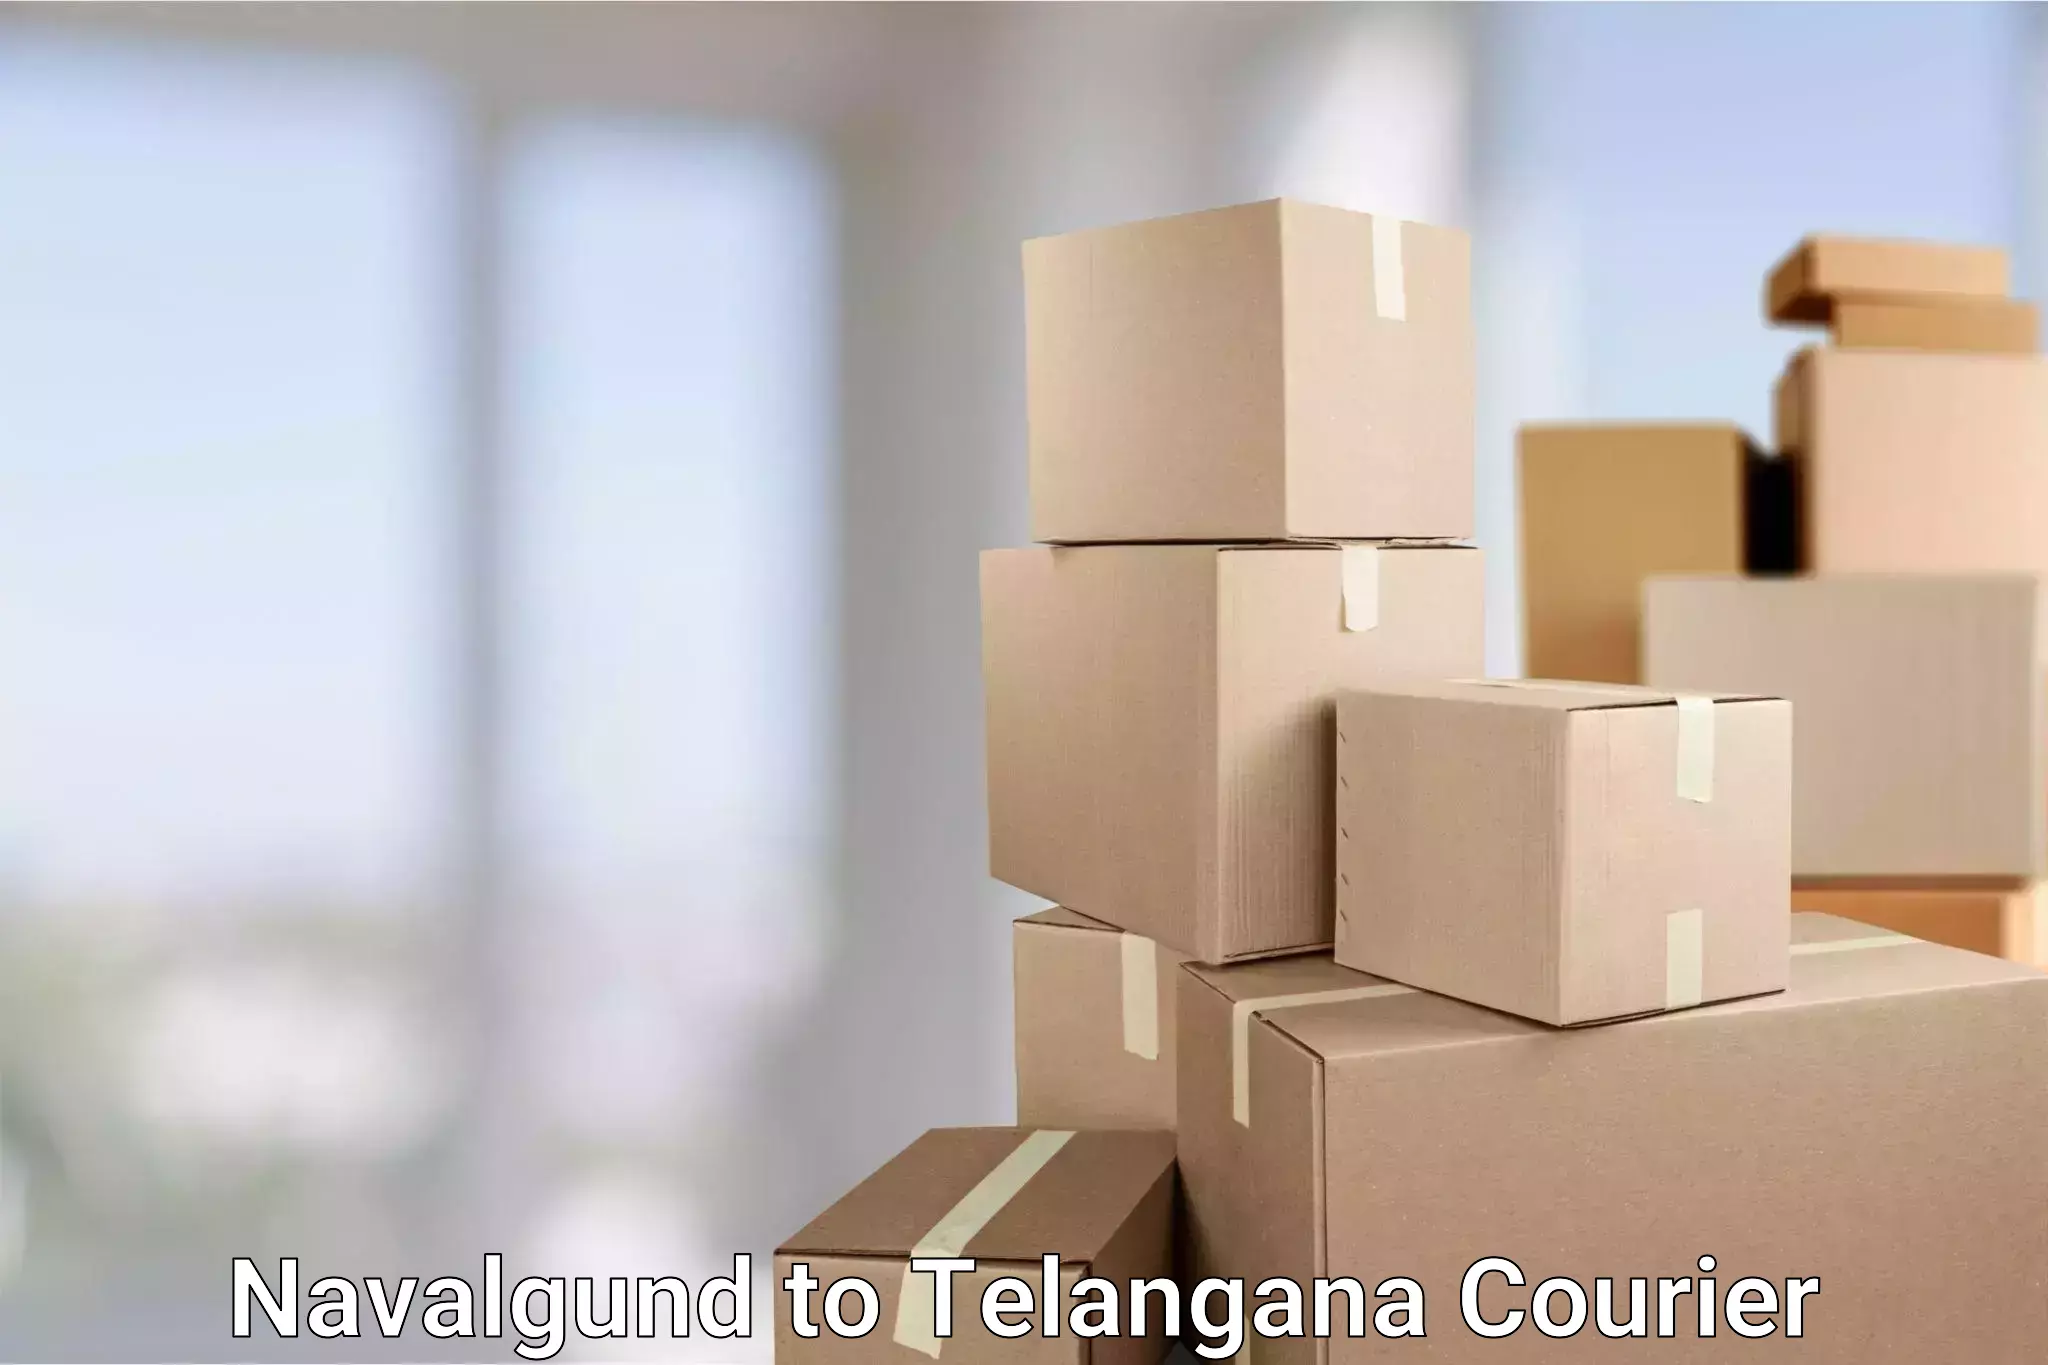 Courier service efficiency in Navalgund to Kalwakurthy